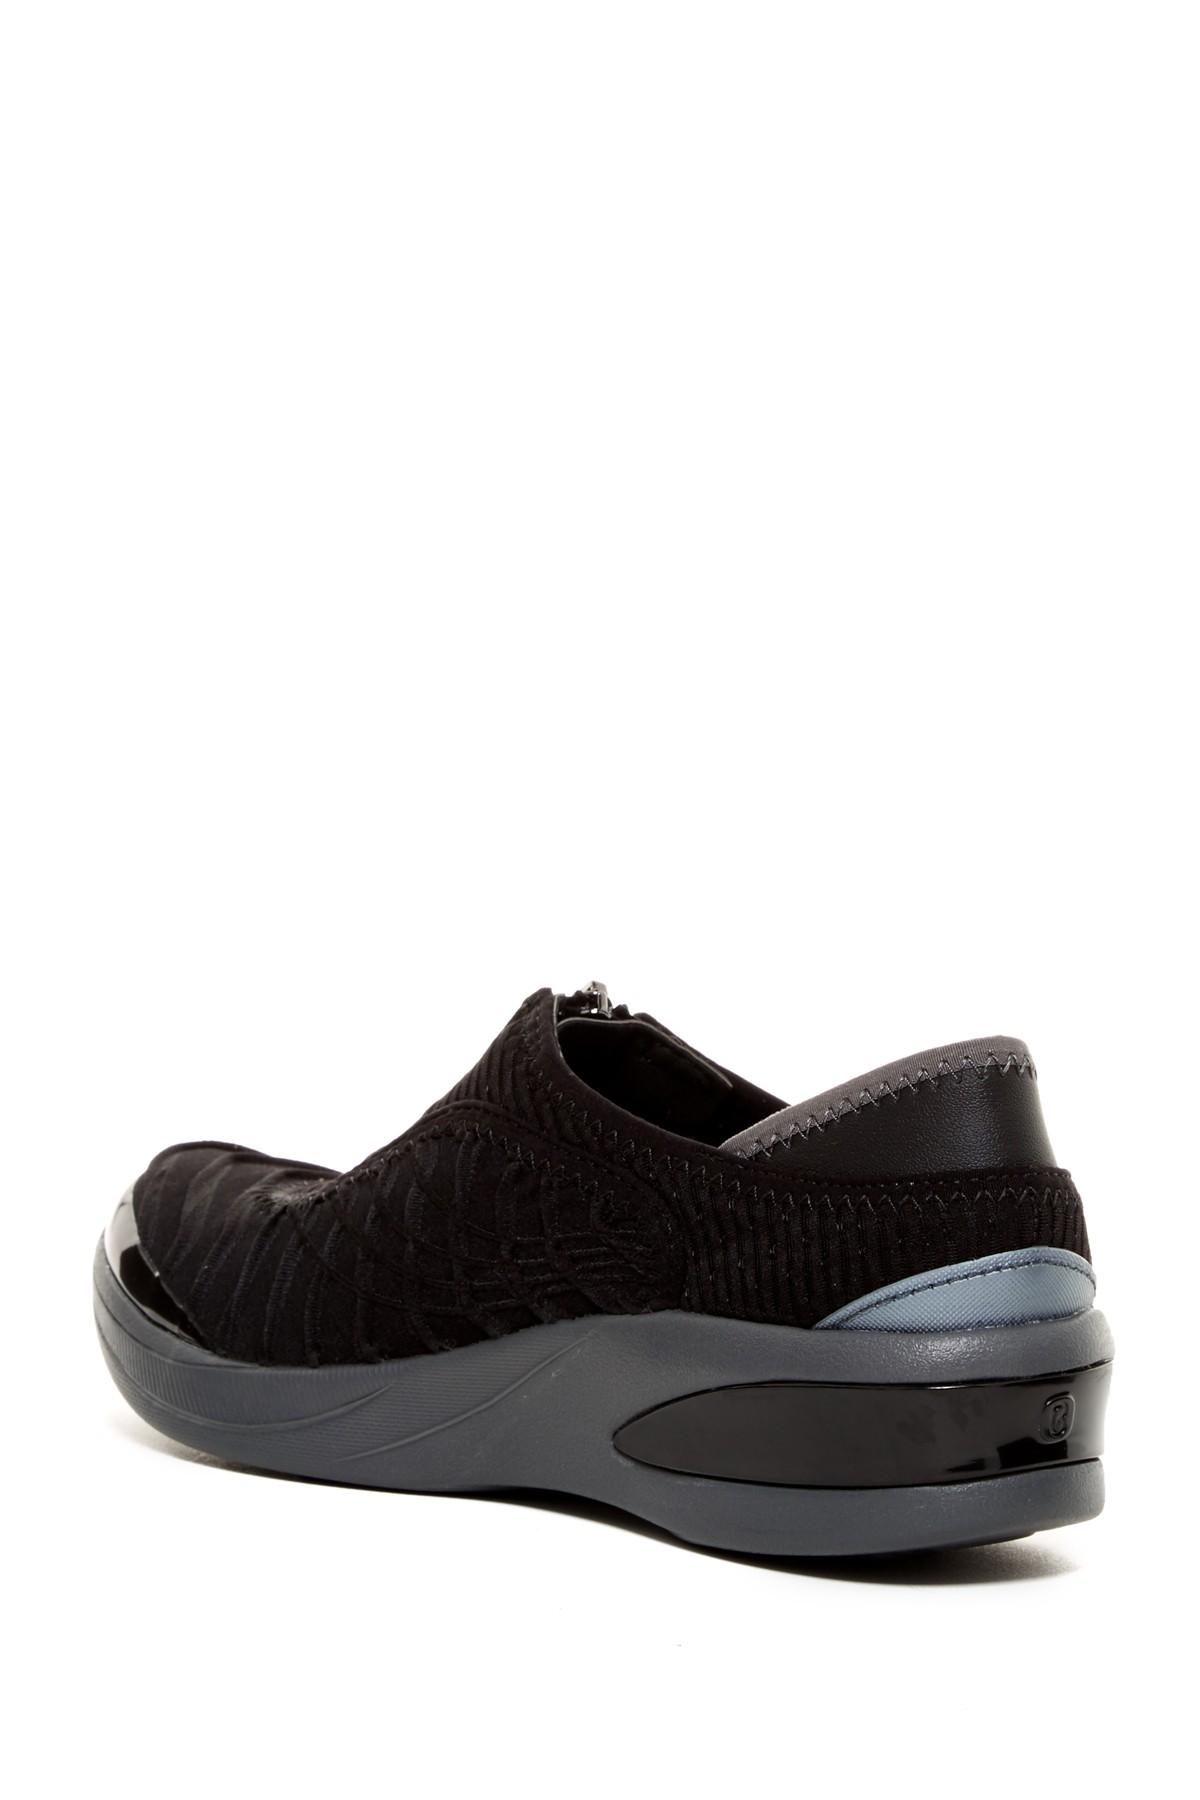 Bzees Fancy Zip Sneaker in Black 3d (Black) - Lyst